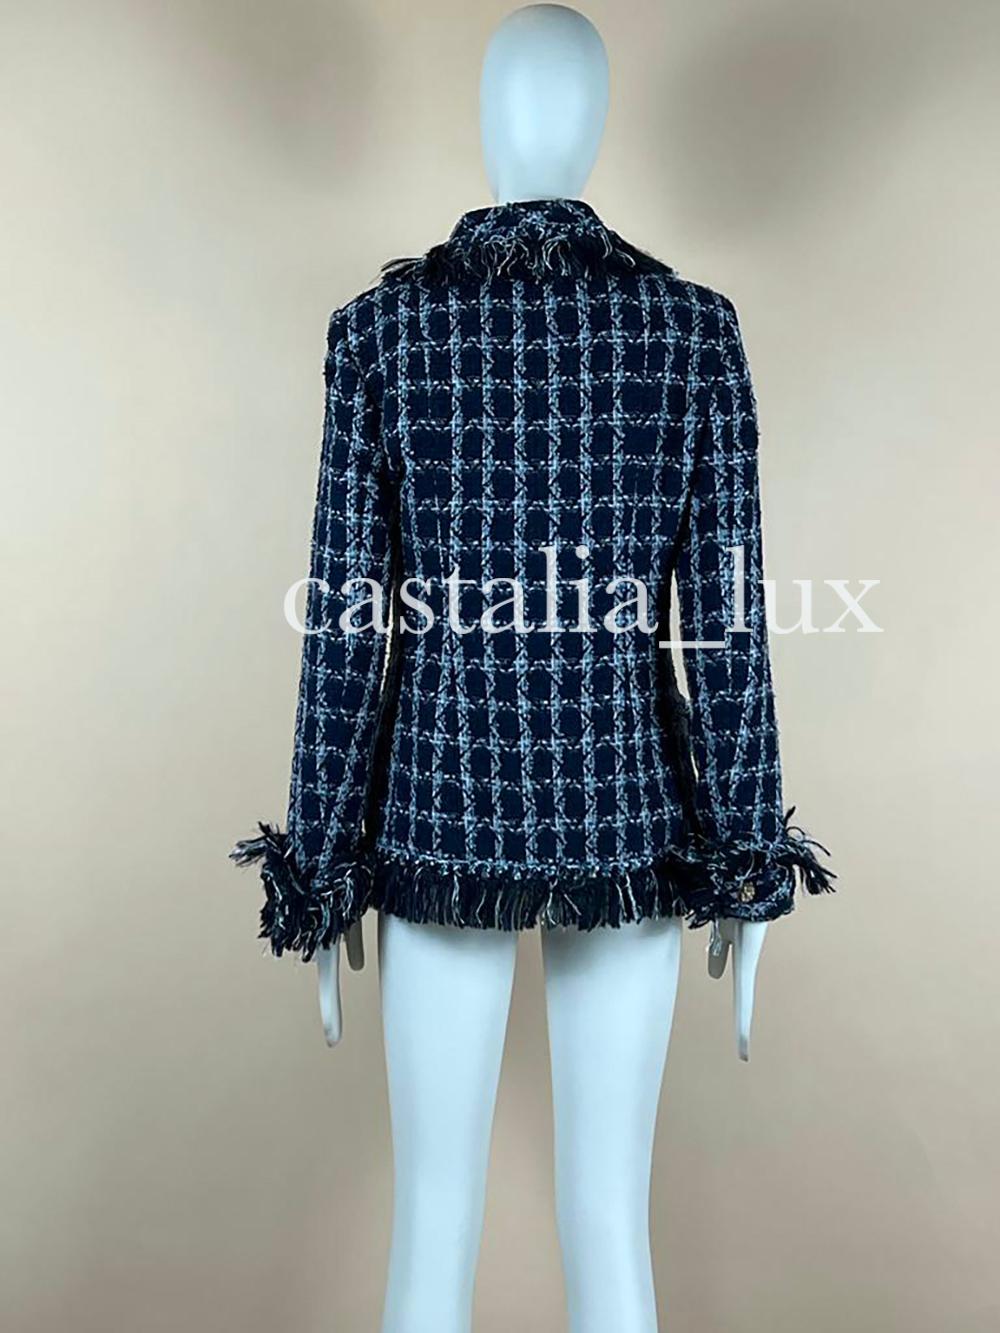 Chanel 11K$ Paris / Dallas Runway Tweed Jacket For Sale 6